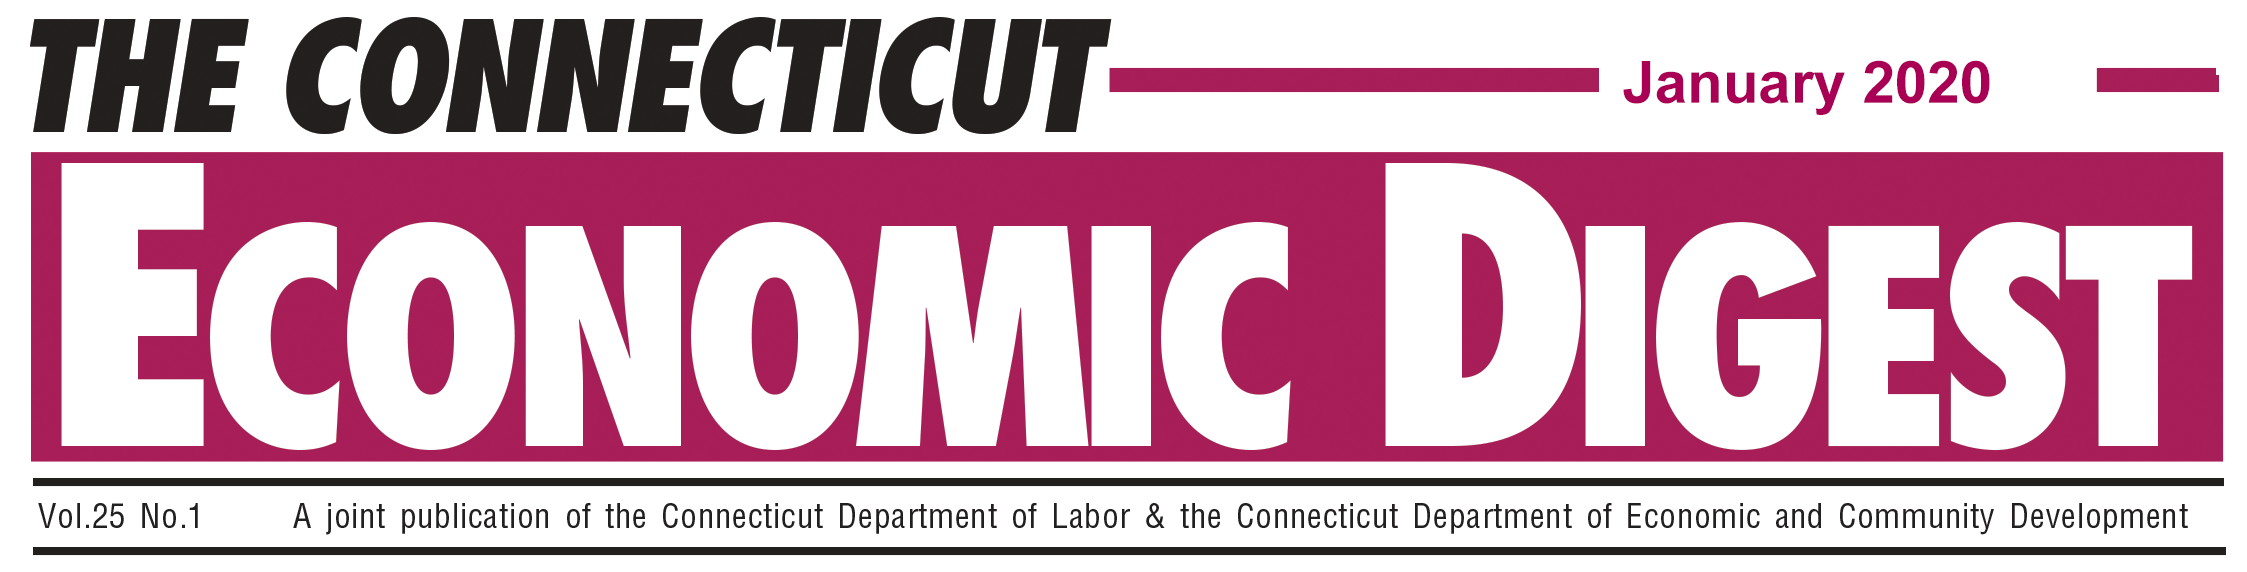 January 2020 Connecticut Economic Digest